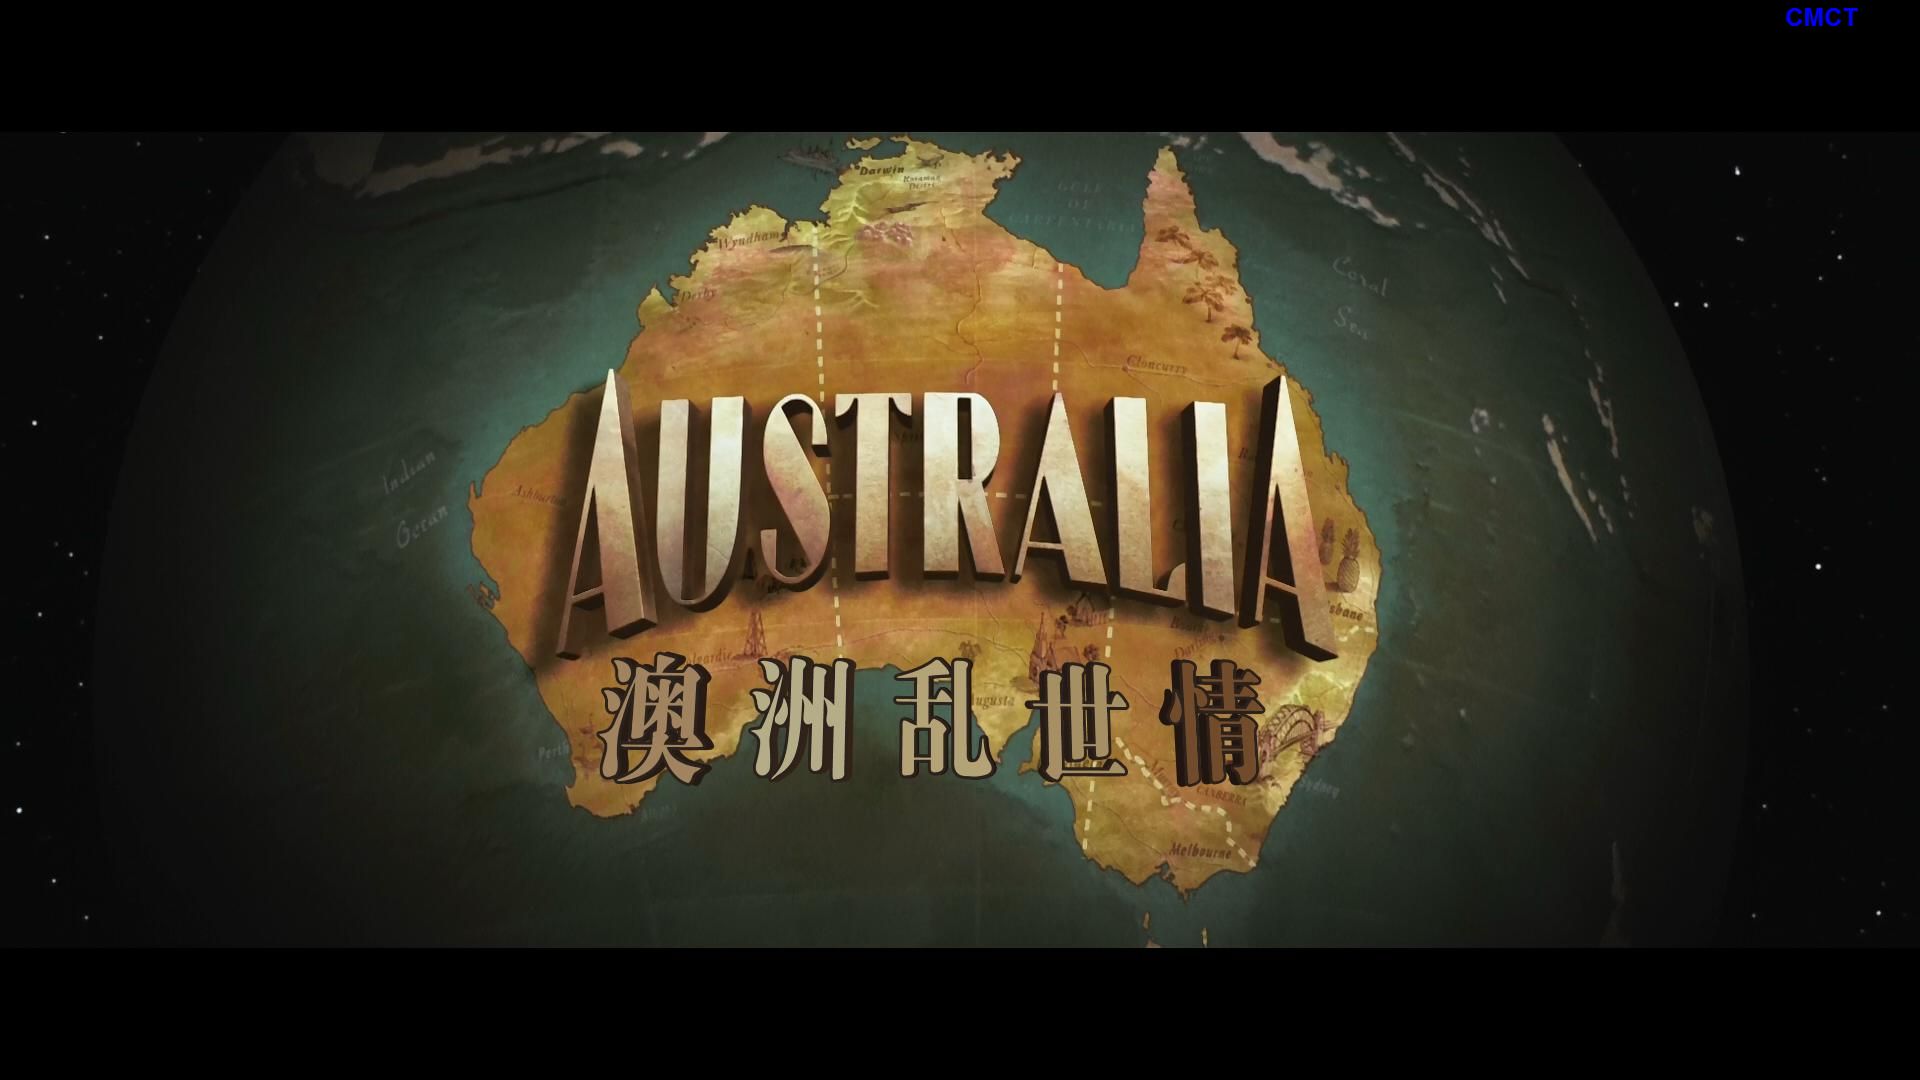 澳洲乱世情 [原盘DIY] [国语] [简/繁/双语/特效字幕] Australia.2008.Blu-ray.1080p.AVC.DTS-HD.MA5.1-CMCT    [43.61 GB]-3.jpg